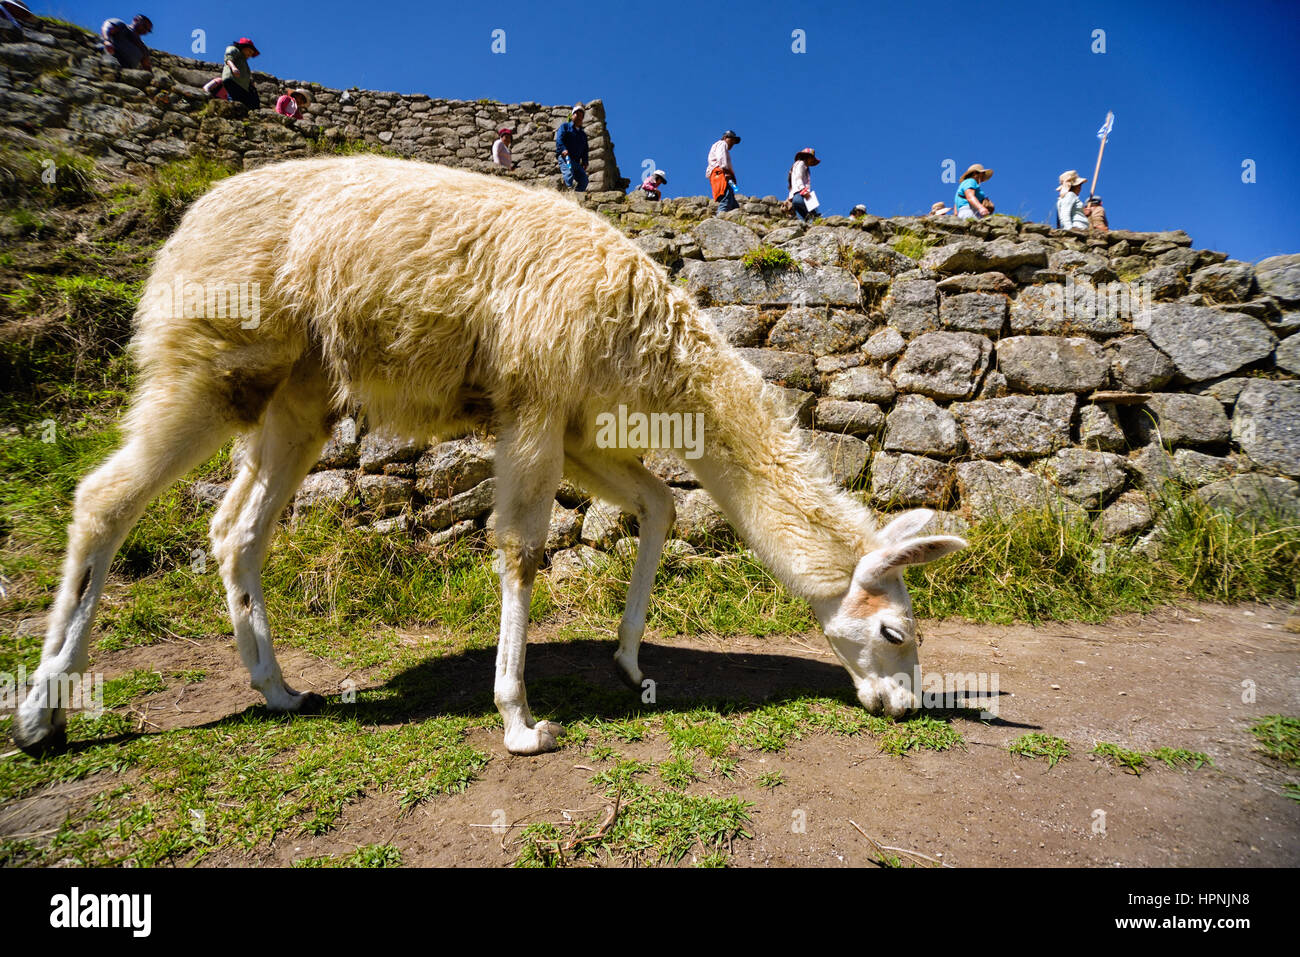 Llama grazes in the ancient city of Machu Picchu, Peru. Stock Photo